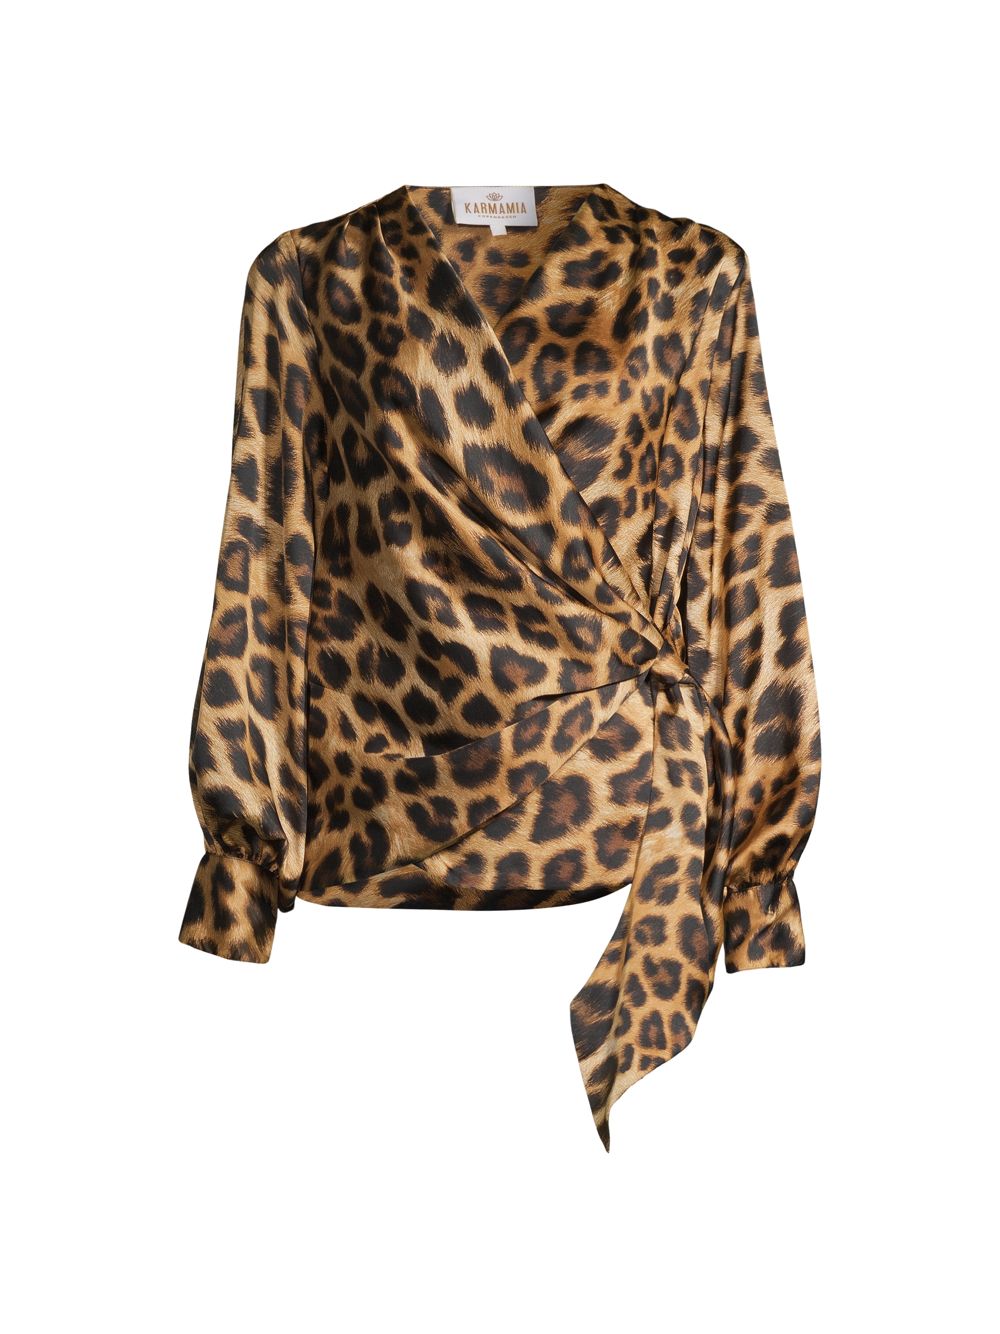 Атласная блузка Ines с леопардовым принтом и драпировкой Karmamia